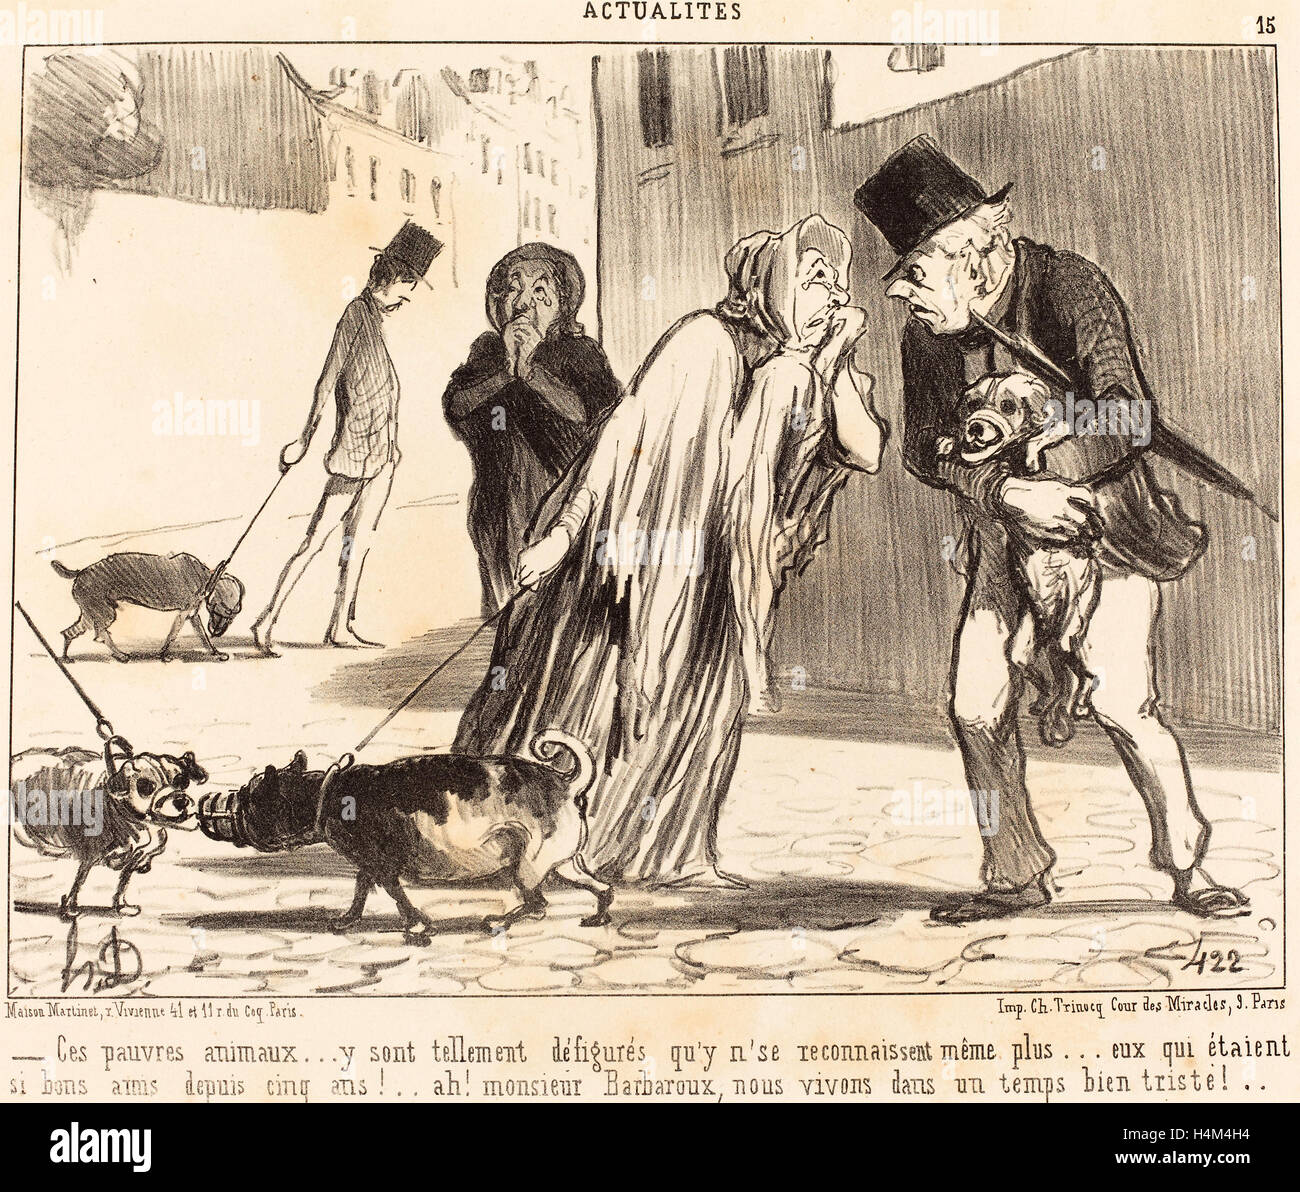 Honoré Daumier (French, 1808 - 1879), Ces pauvres animaux n'se reconnaissent plus, 1852, lithograph Stock Photo